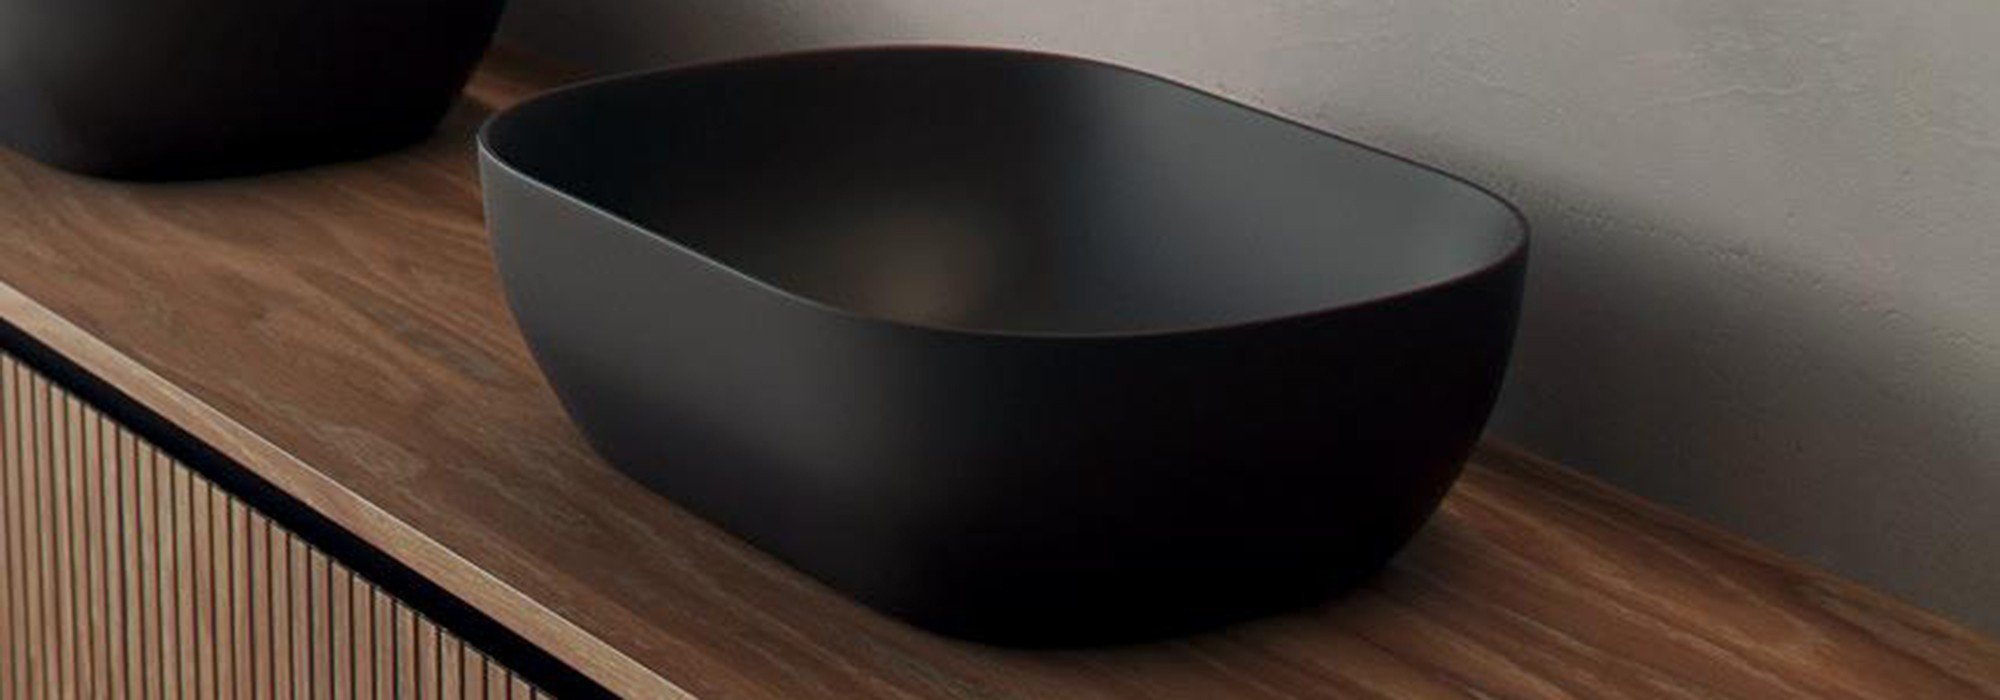 Gama de lavabos solid surface, hechos a tu medida :: Ikebe, fabrica de muebles de baño a medida, lavabos solid surface, lavabos resina, lavabos corian y complementos para el baño.